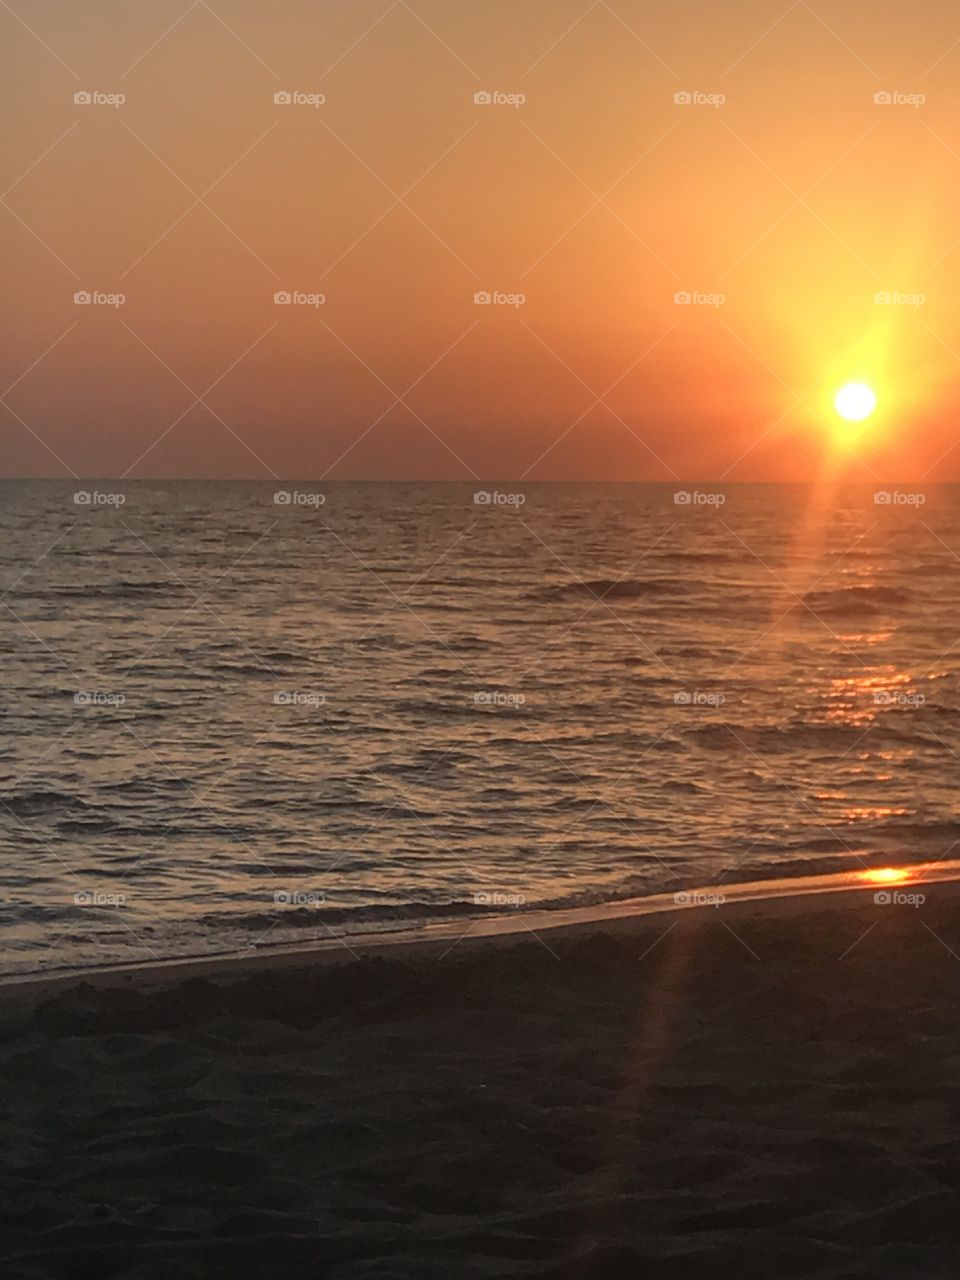 Sunset on beach